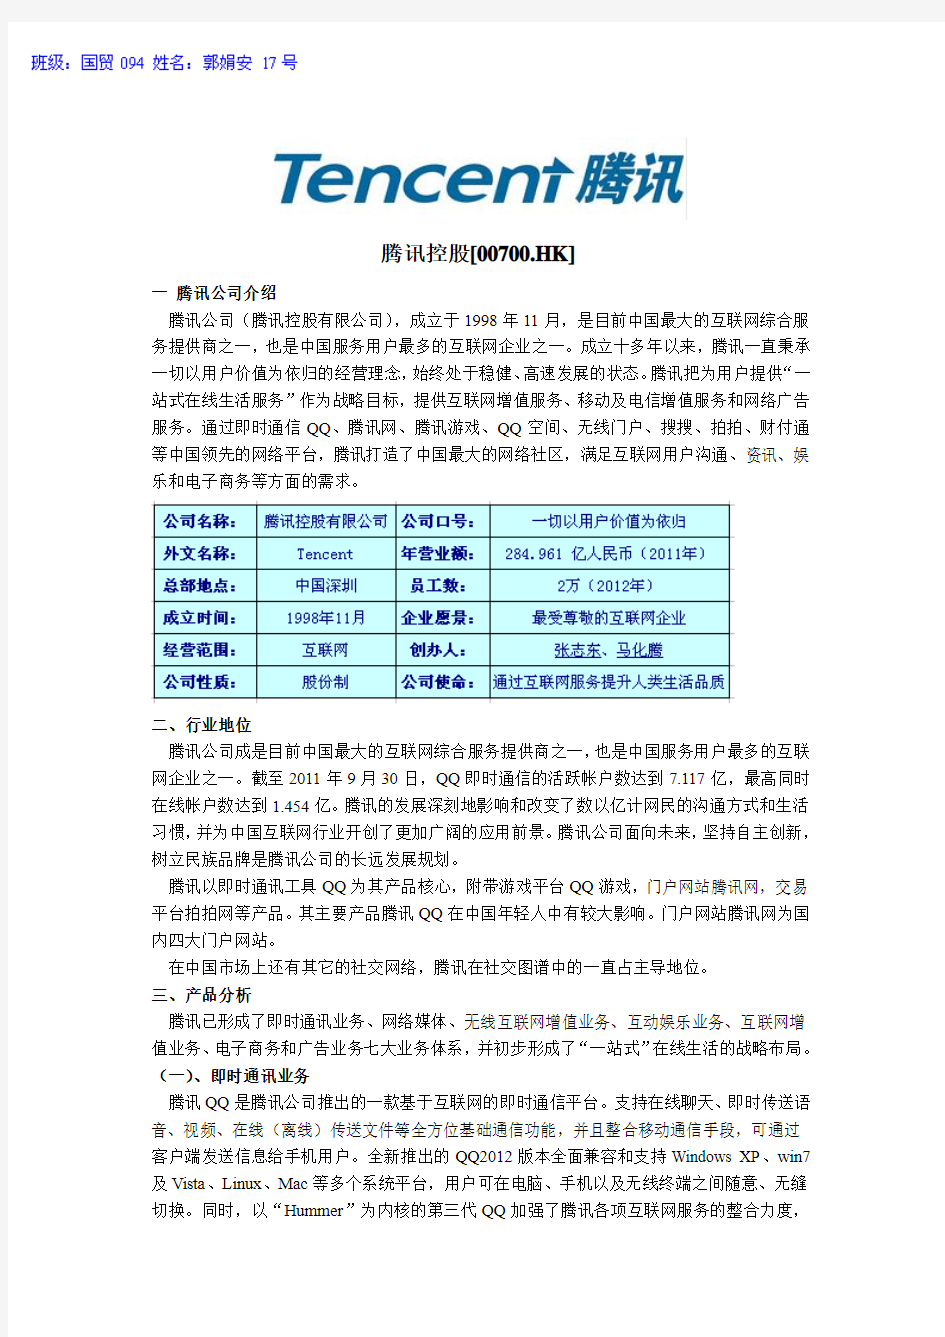 股票推荐分析(腾讯科技 00700 HK)